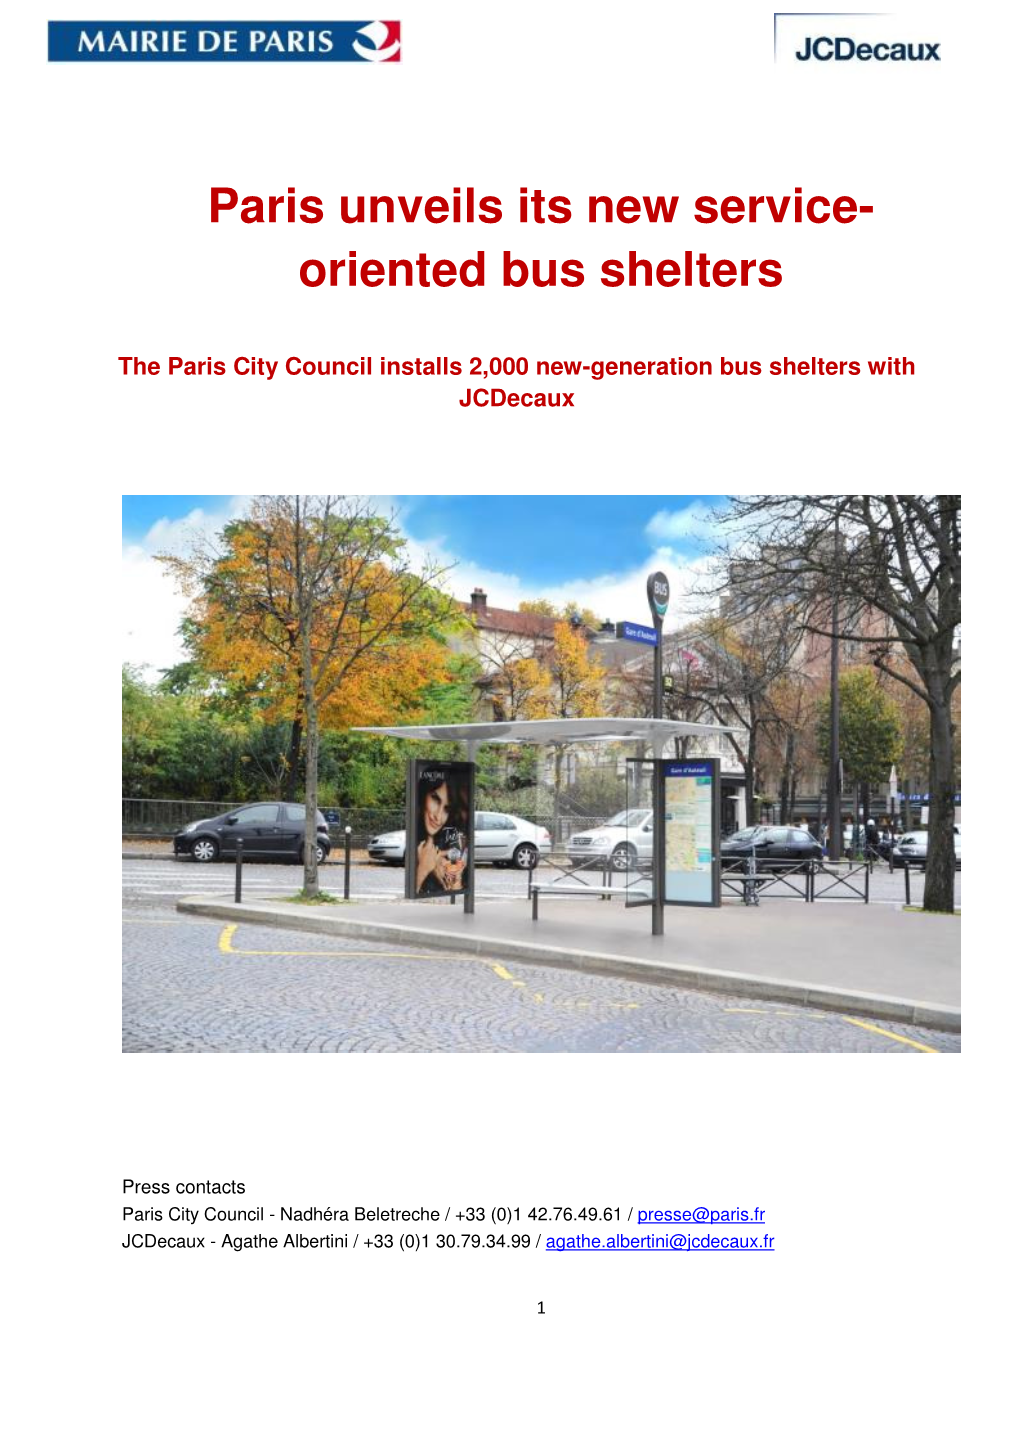 Paris Unveils Its New Service- Oriented Bus Shelters